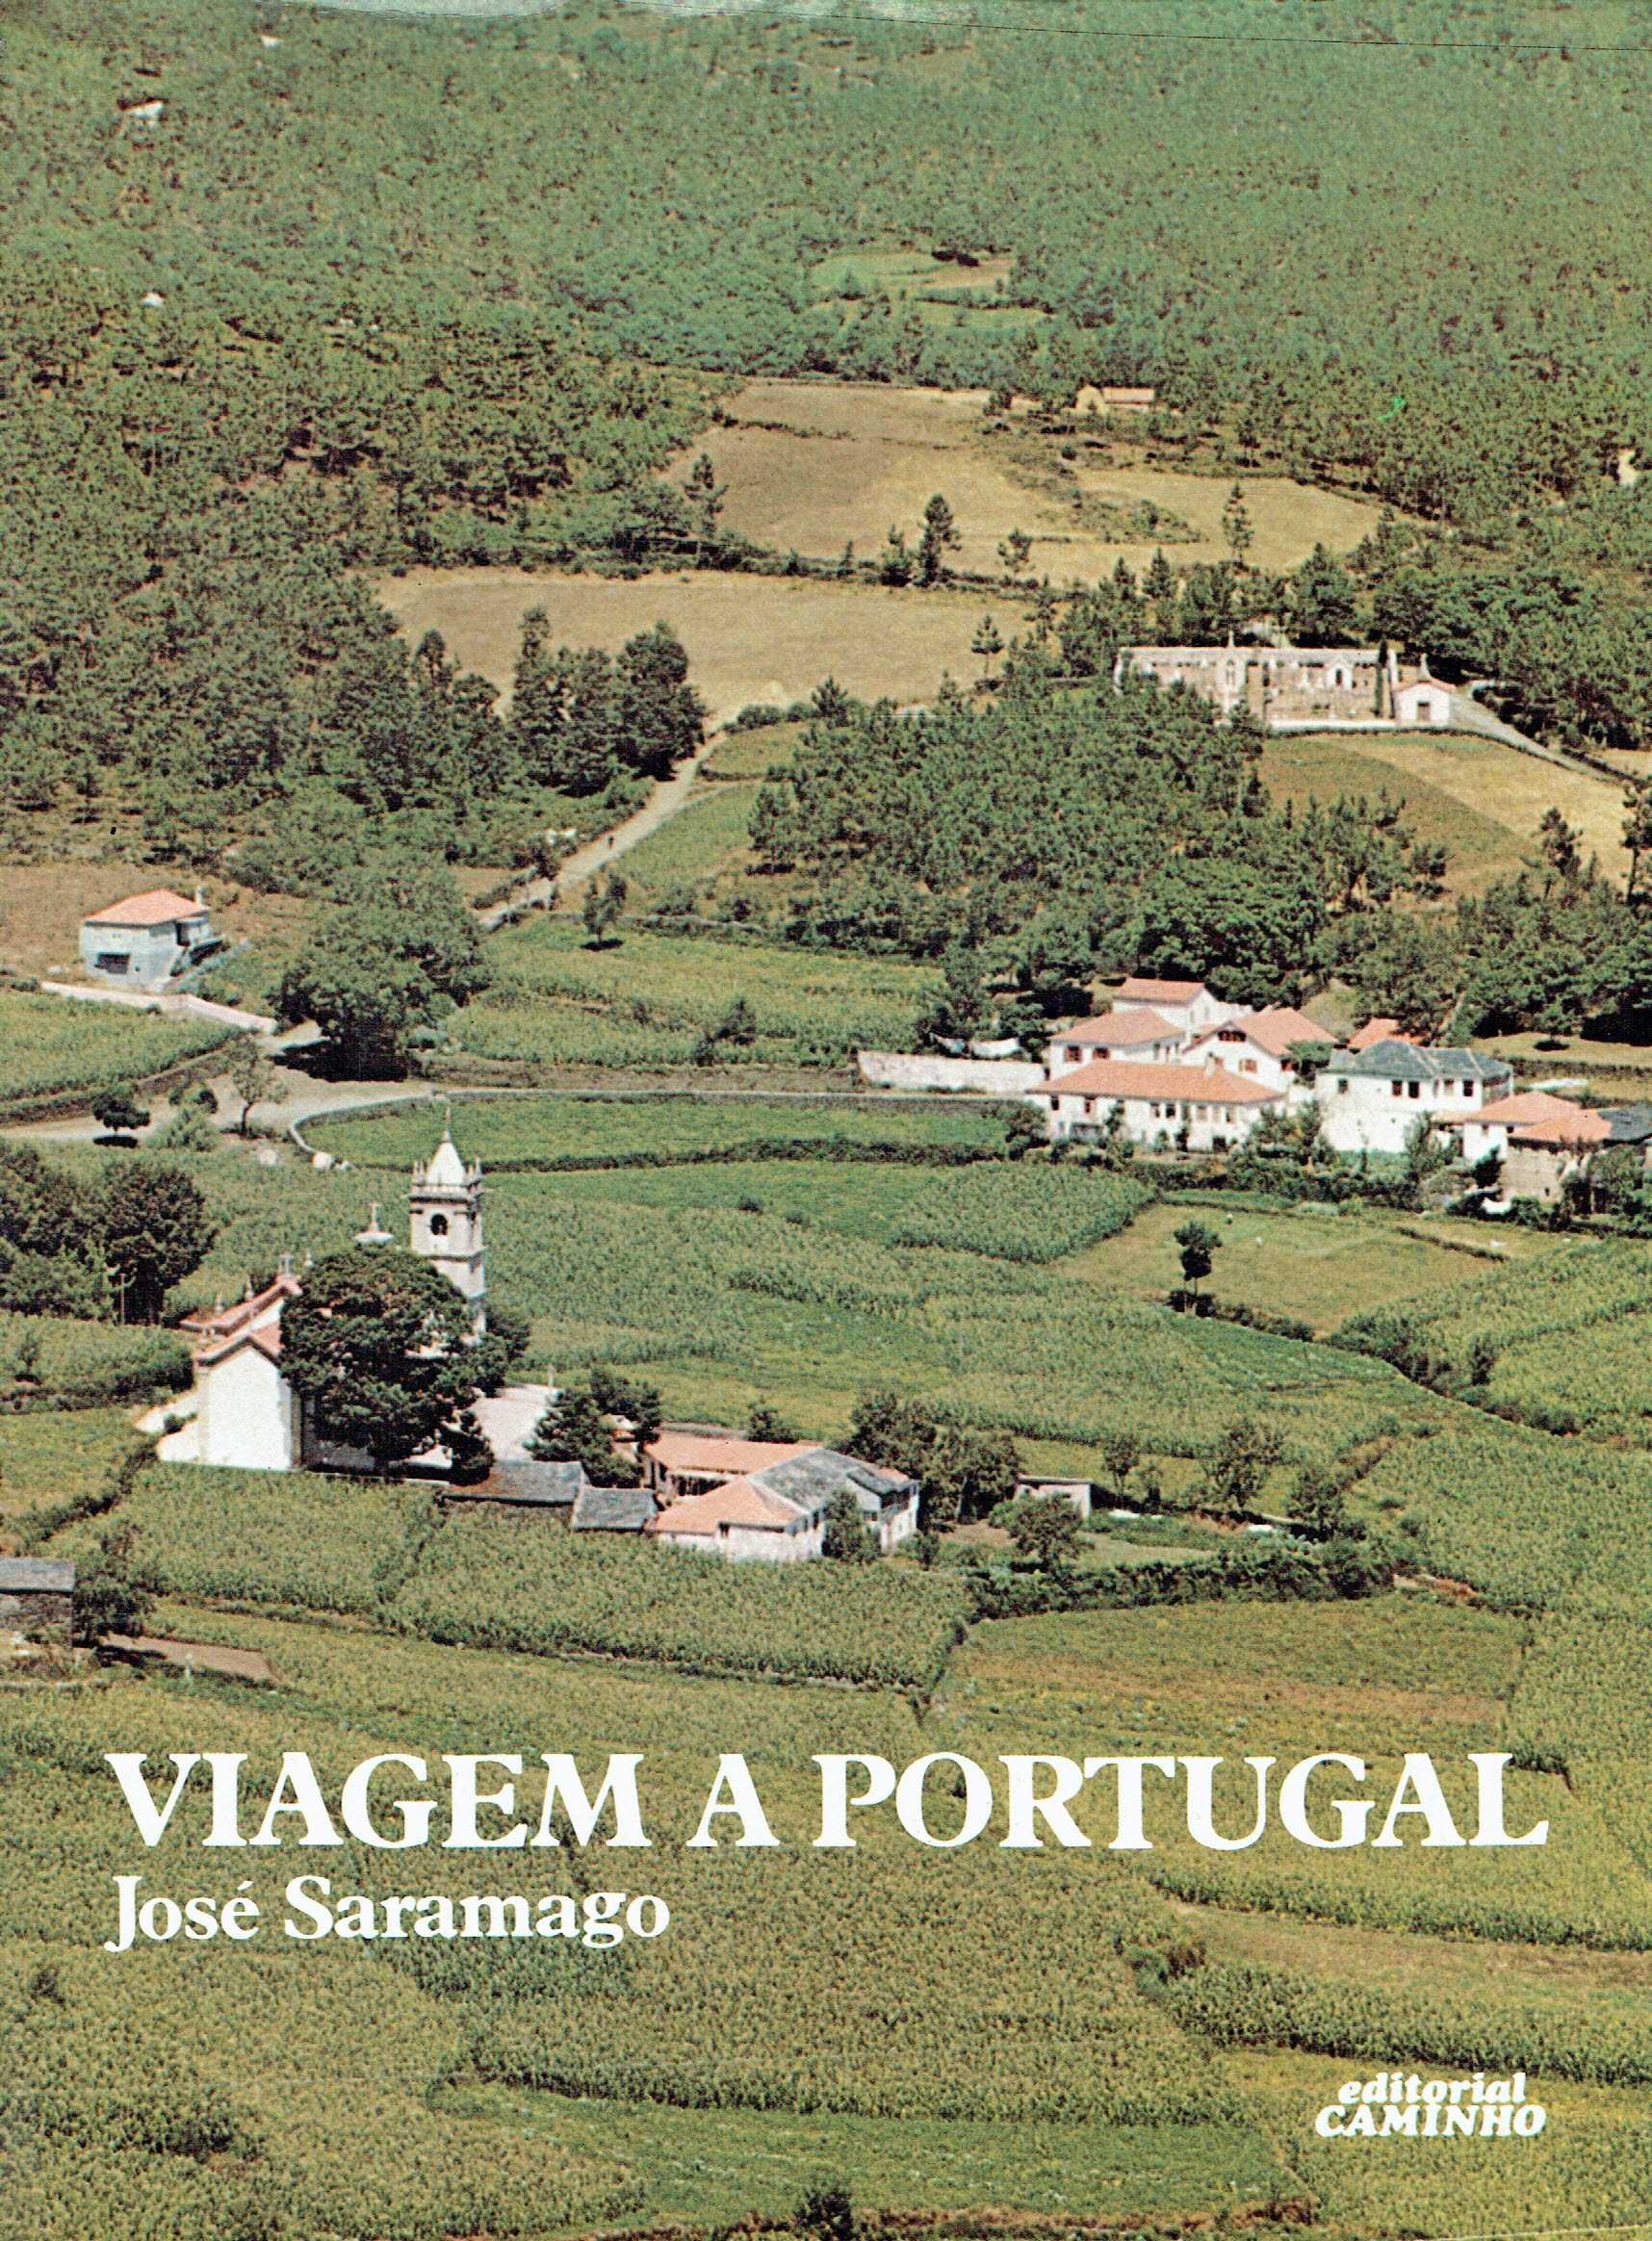 3408 
Viagem a Portugal
de José Saramago